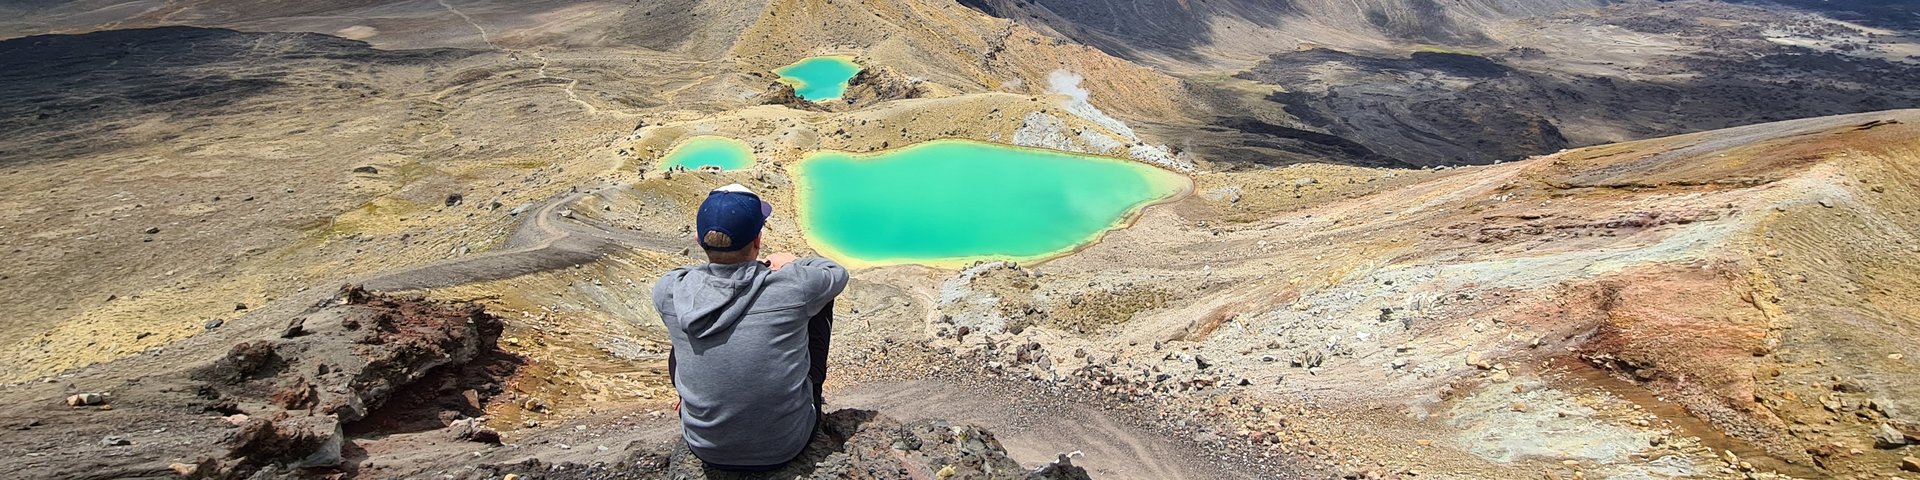 Sicht auf die Emerald Lakes während dem Tongariro Alpine Crossing